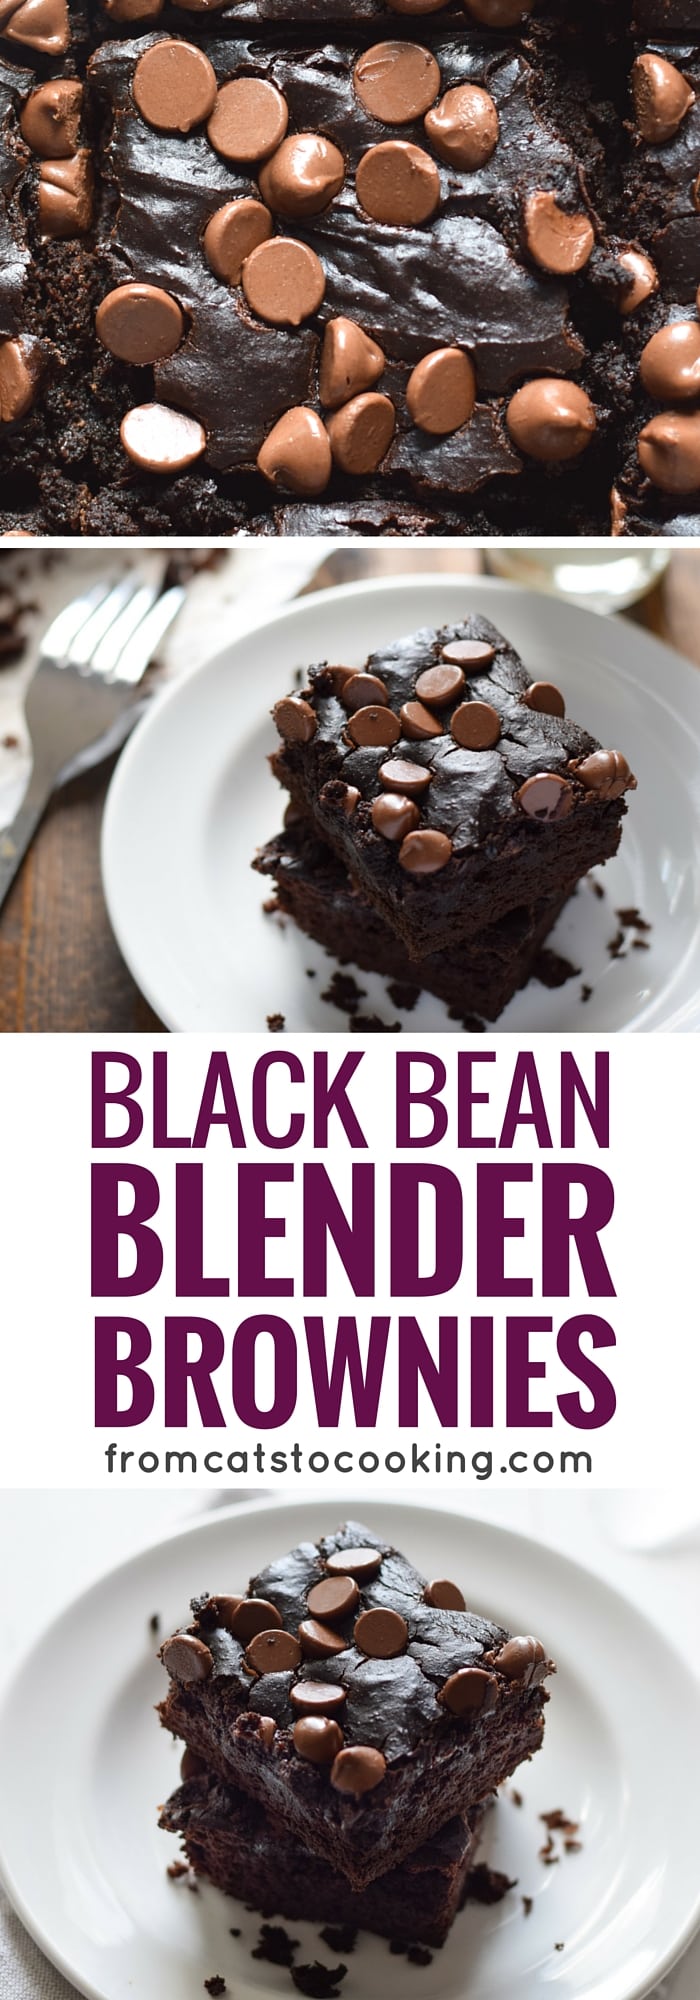 Mexican Black Bean Blender Brownies - Isabel Eats